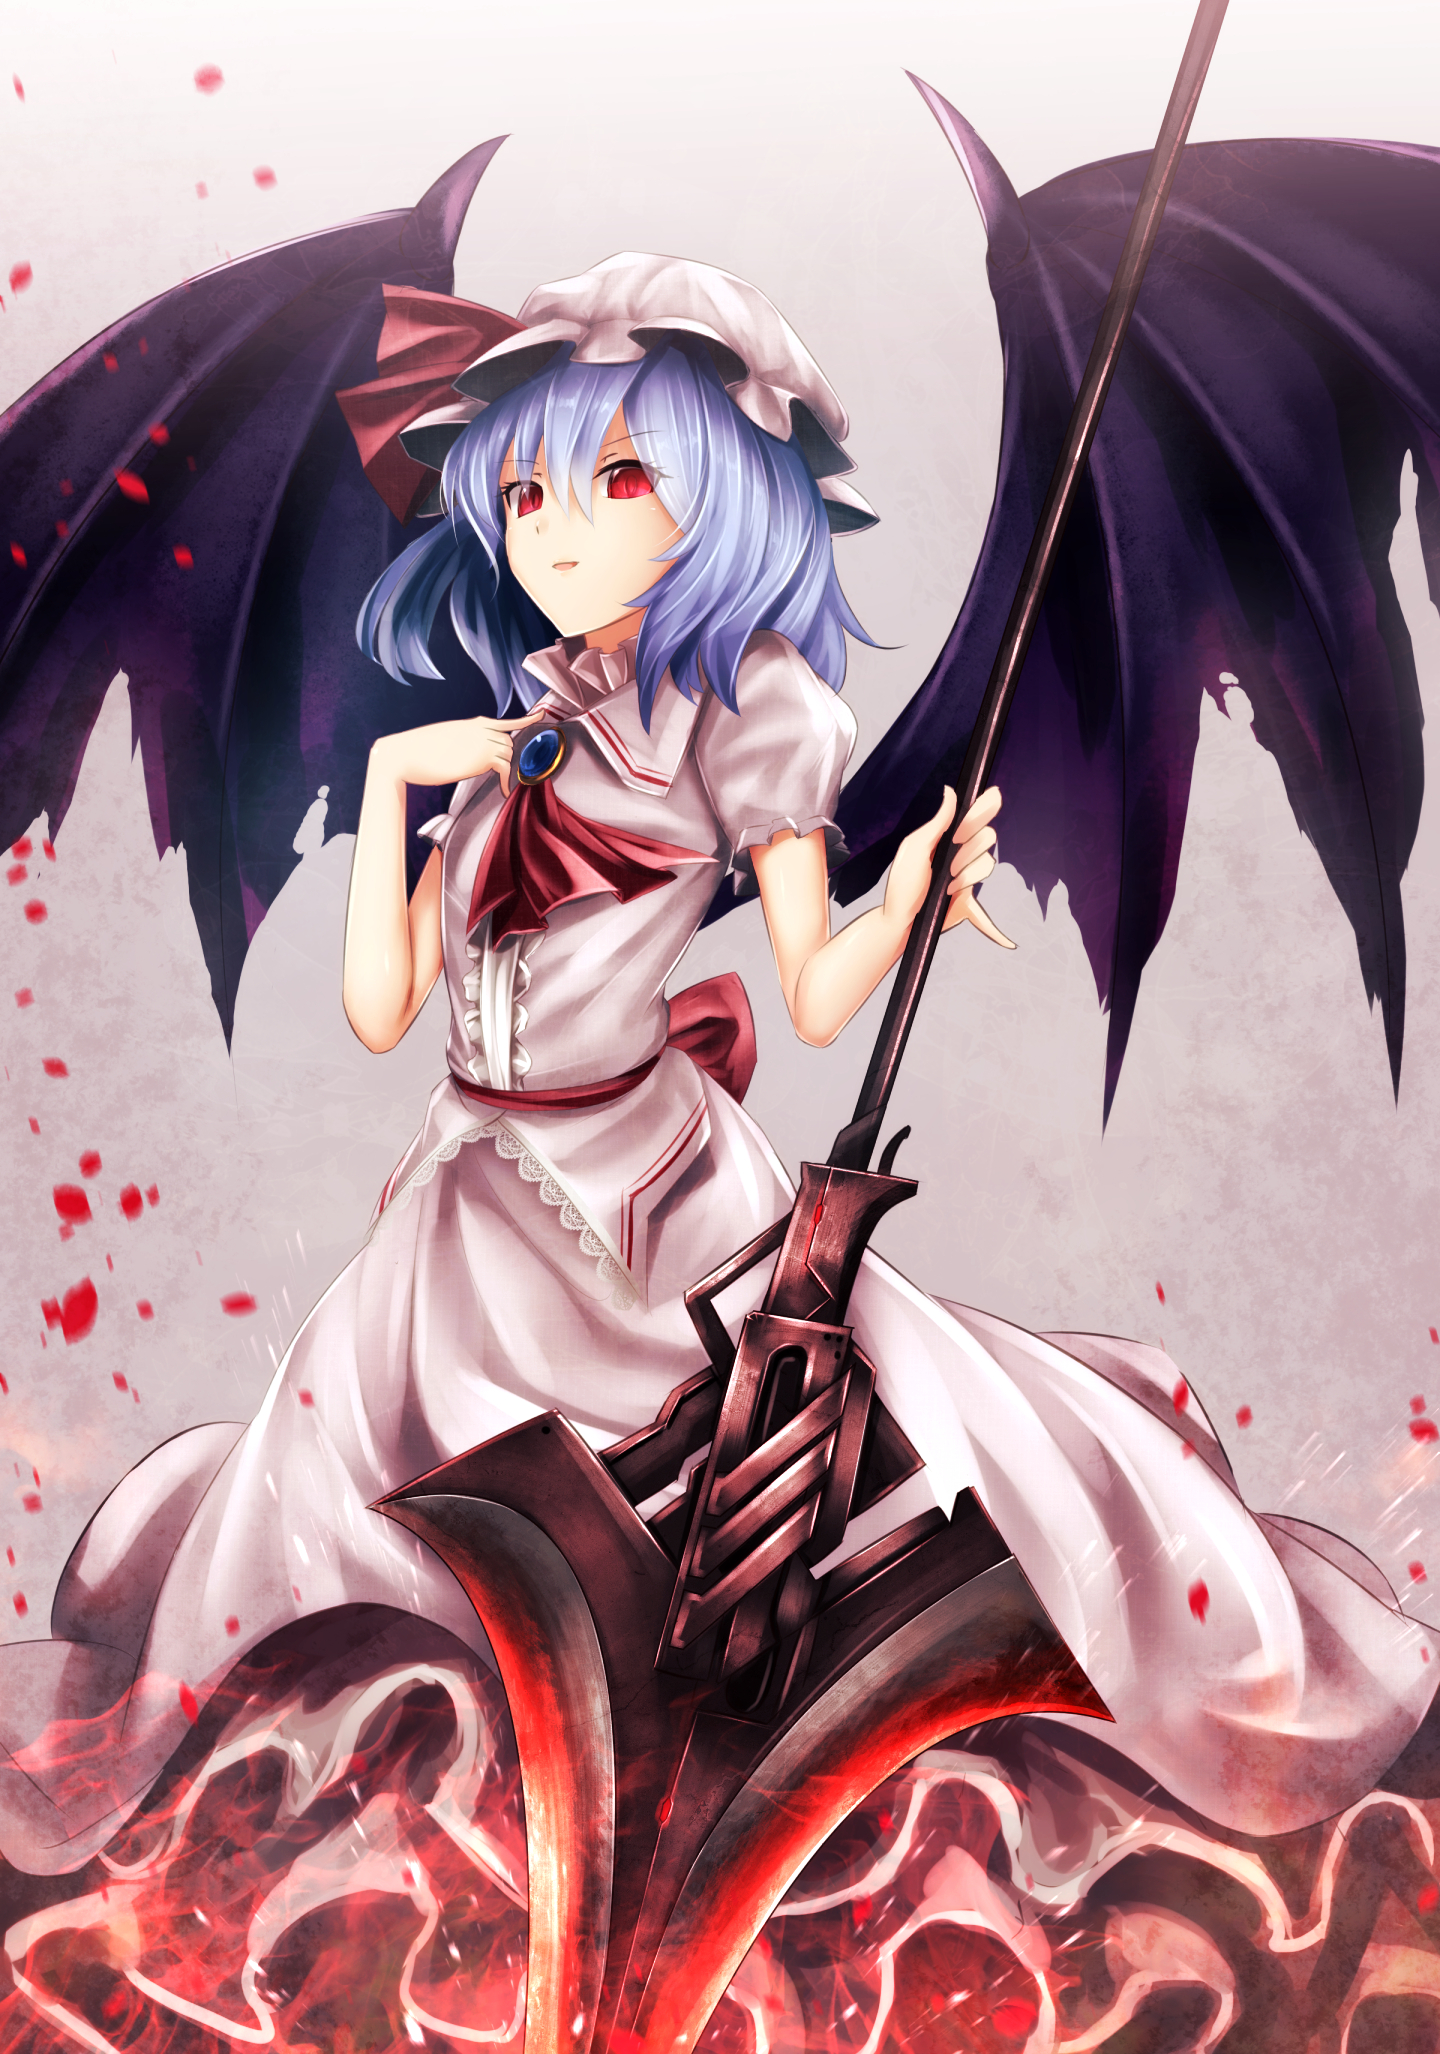 Touhou Remilia Scarlet Anime Girls Sinkai Blue Hair Red Eyes Wings Weapon Dress 1440x2054